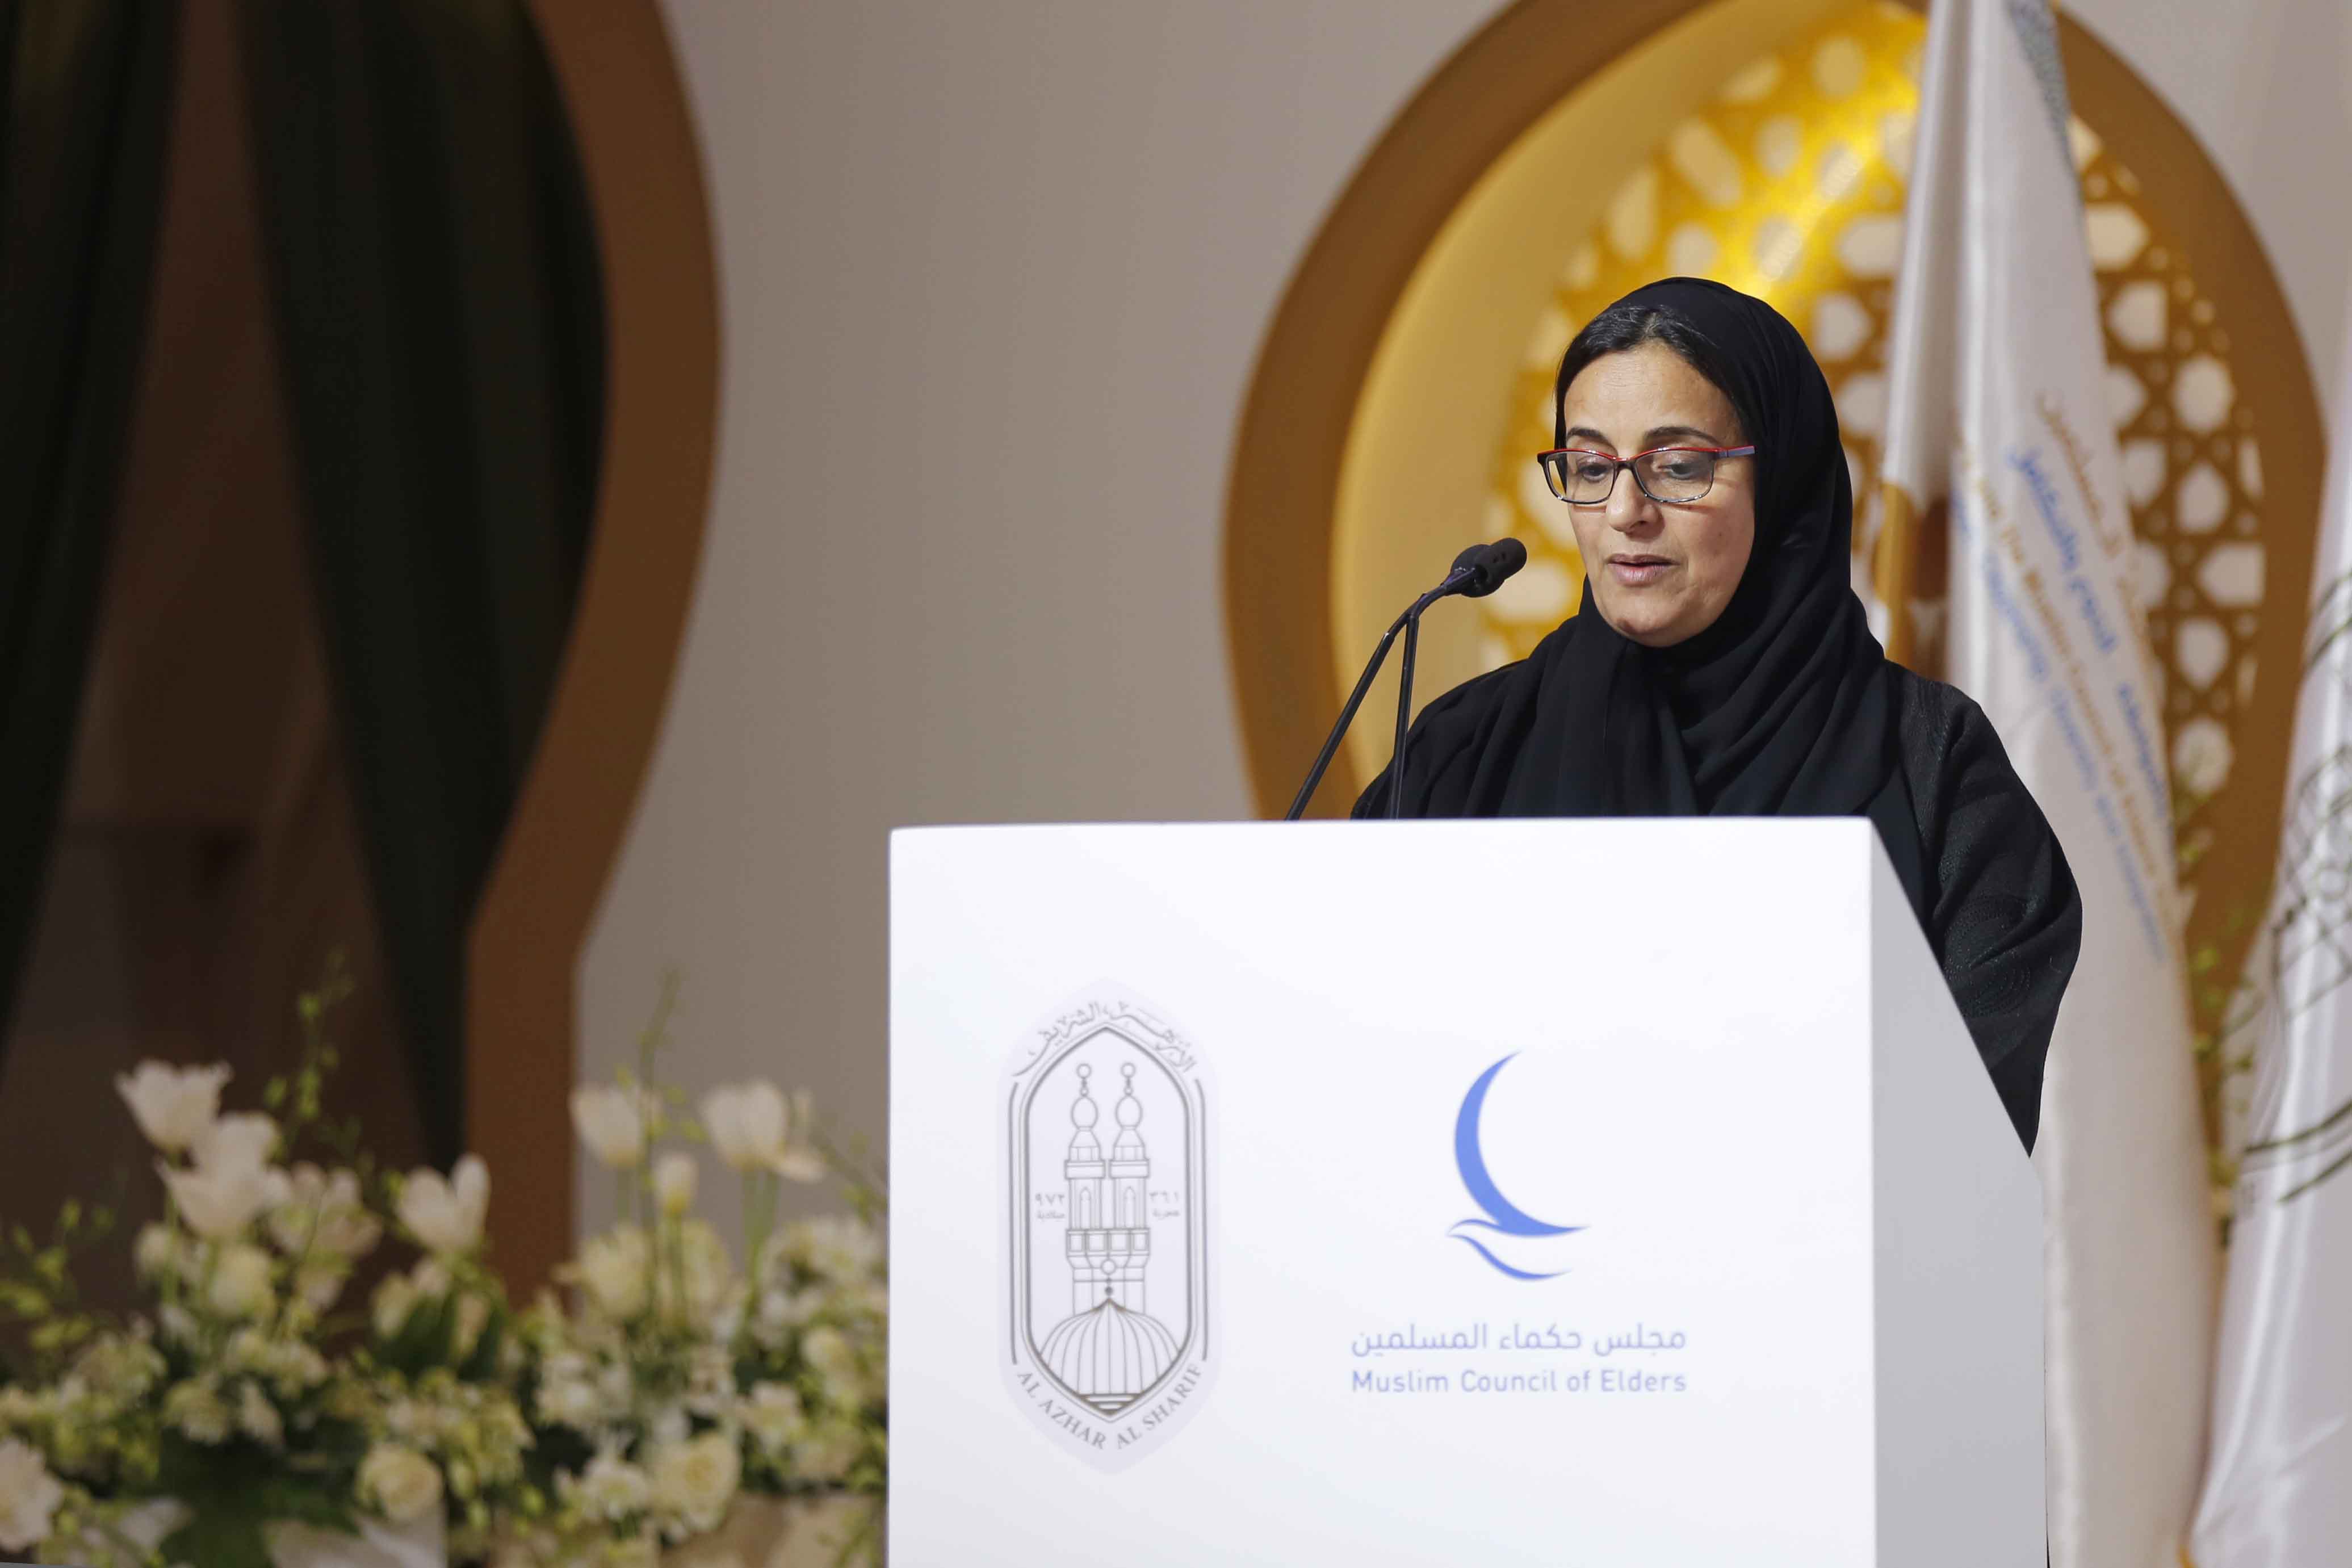   الدكتورة لبنى القاسمي في كلمتها بممؤتمر" الحرية والمواطنة...التنوع والتكامل":